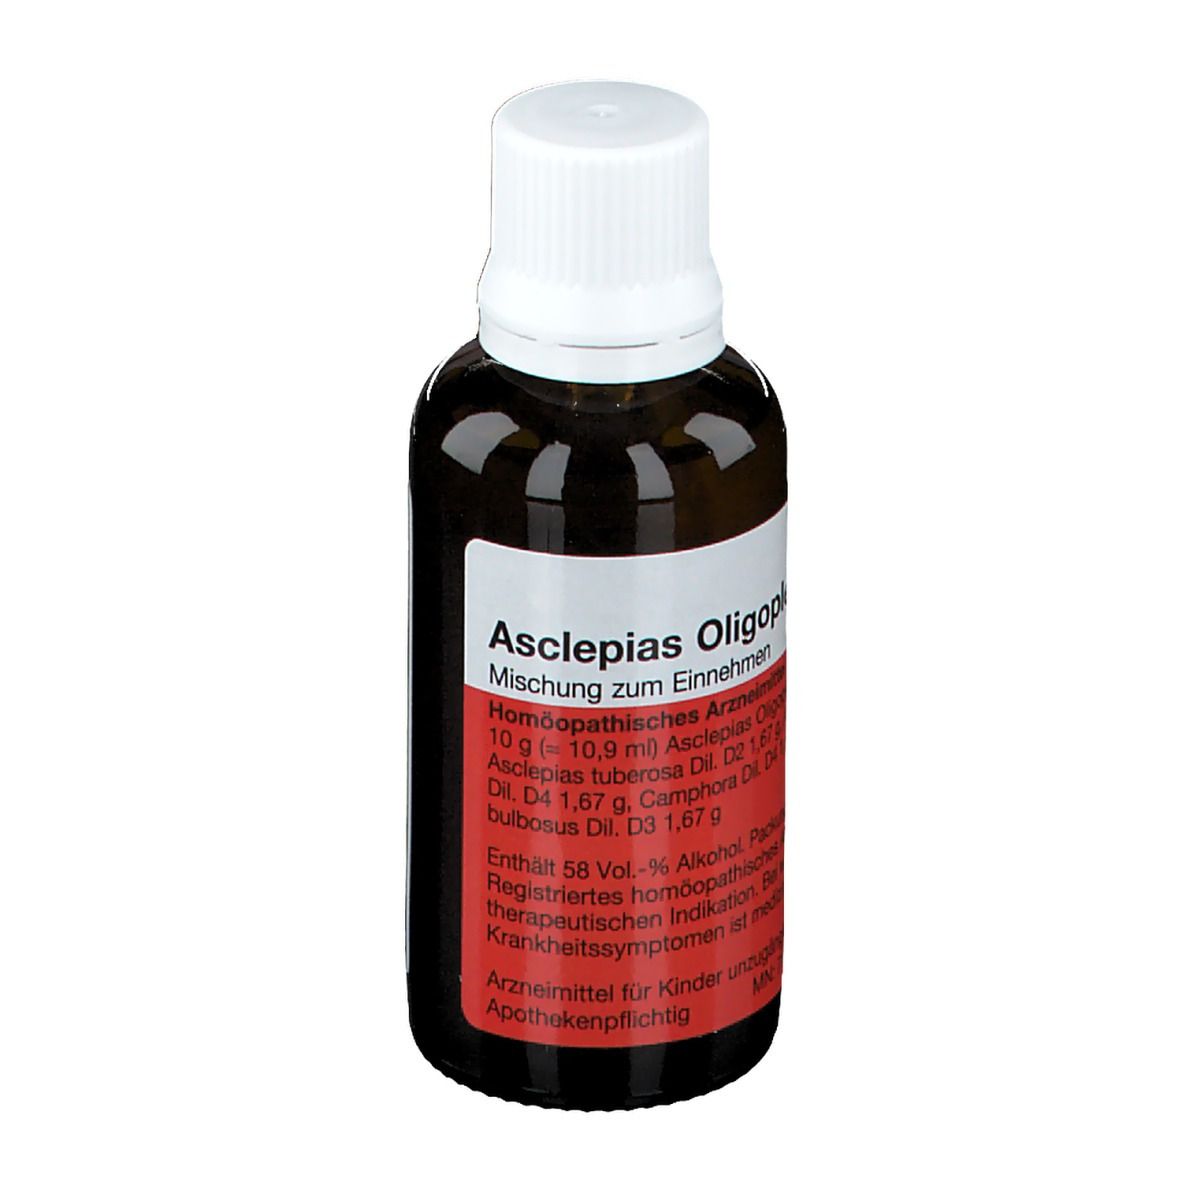 Asclepias Oligoplex®